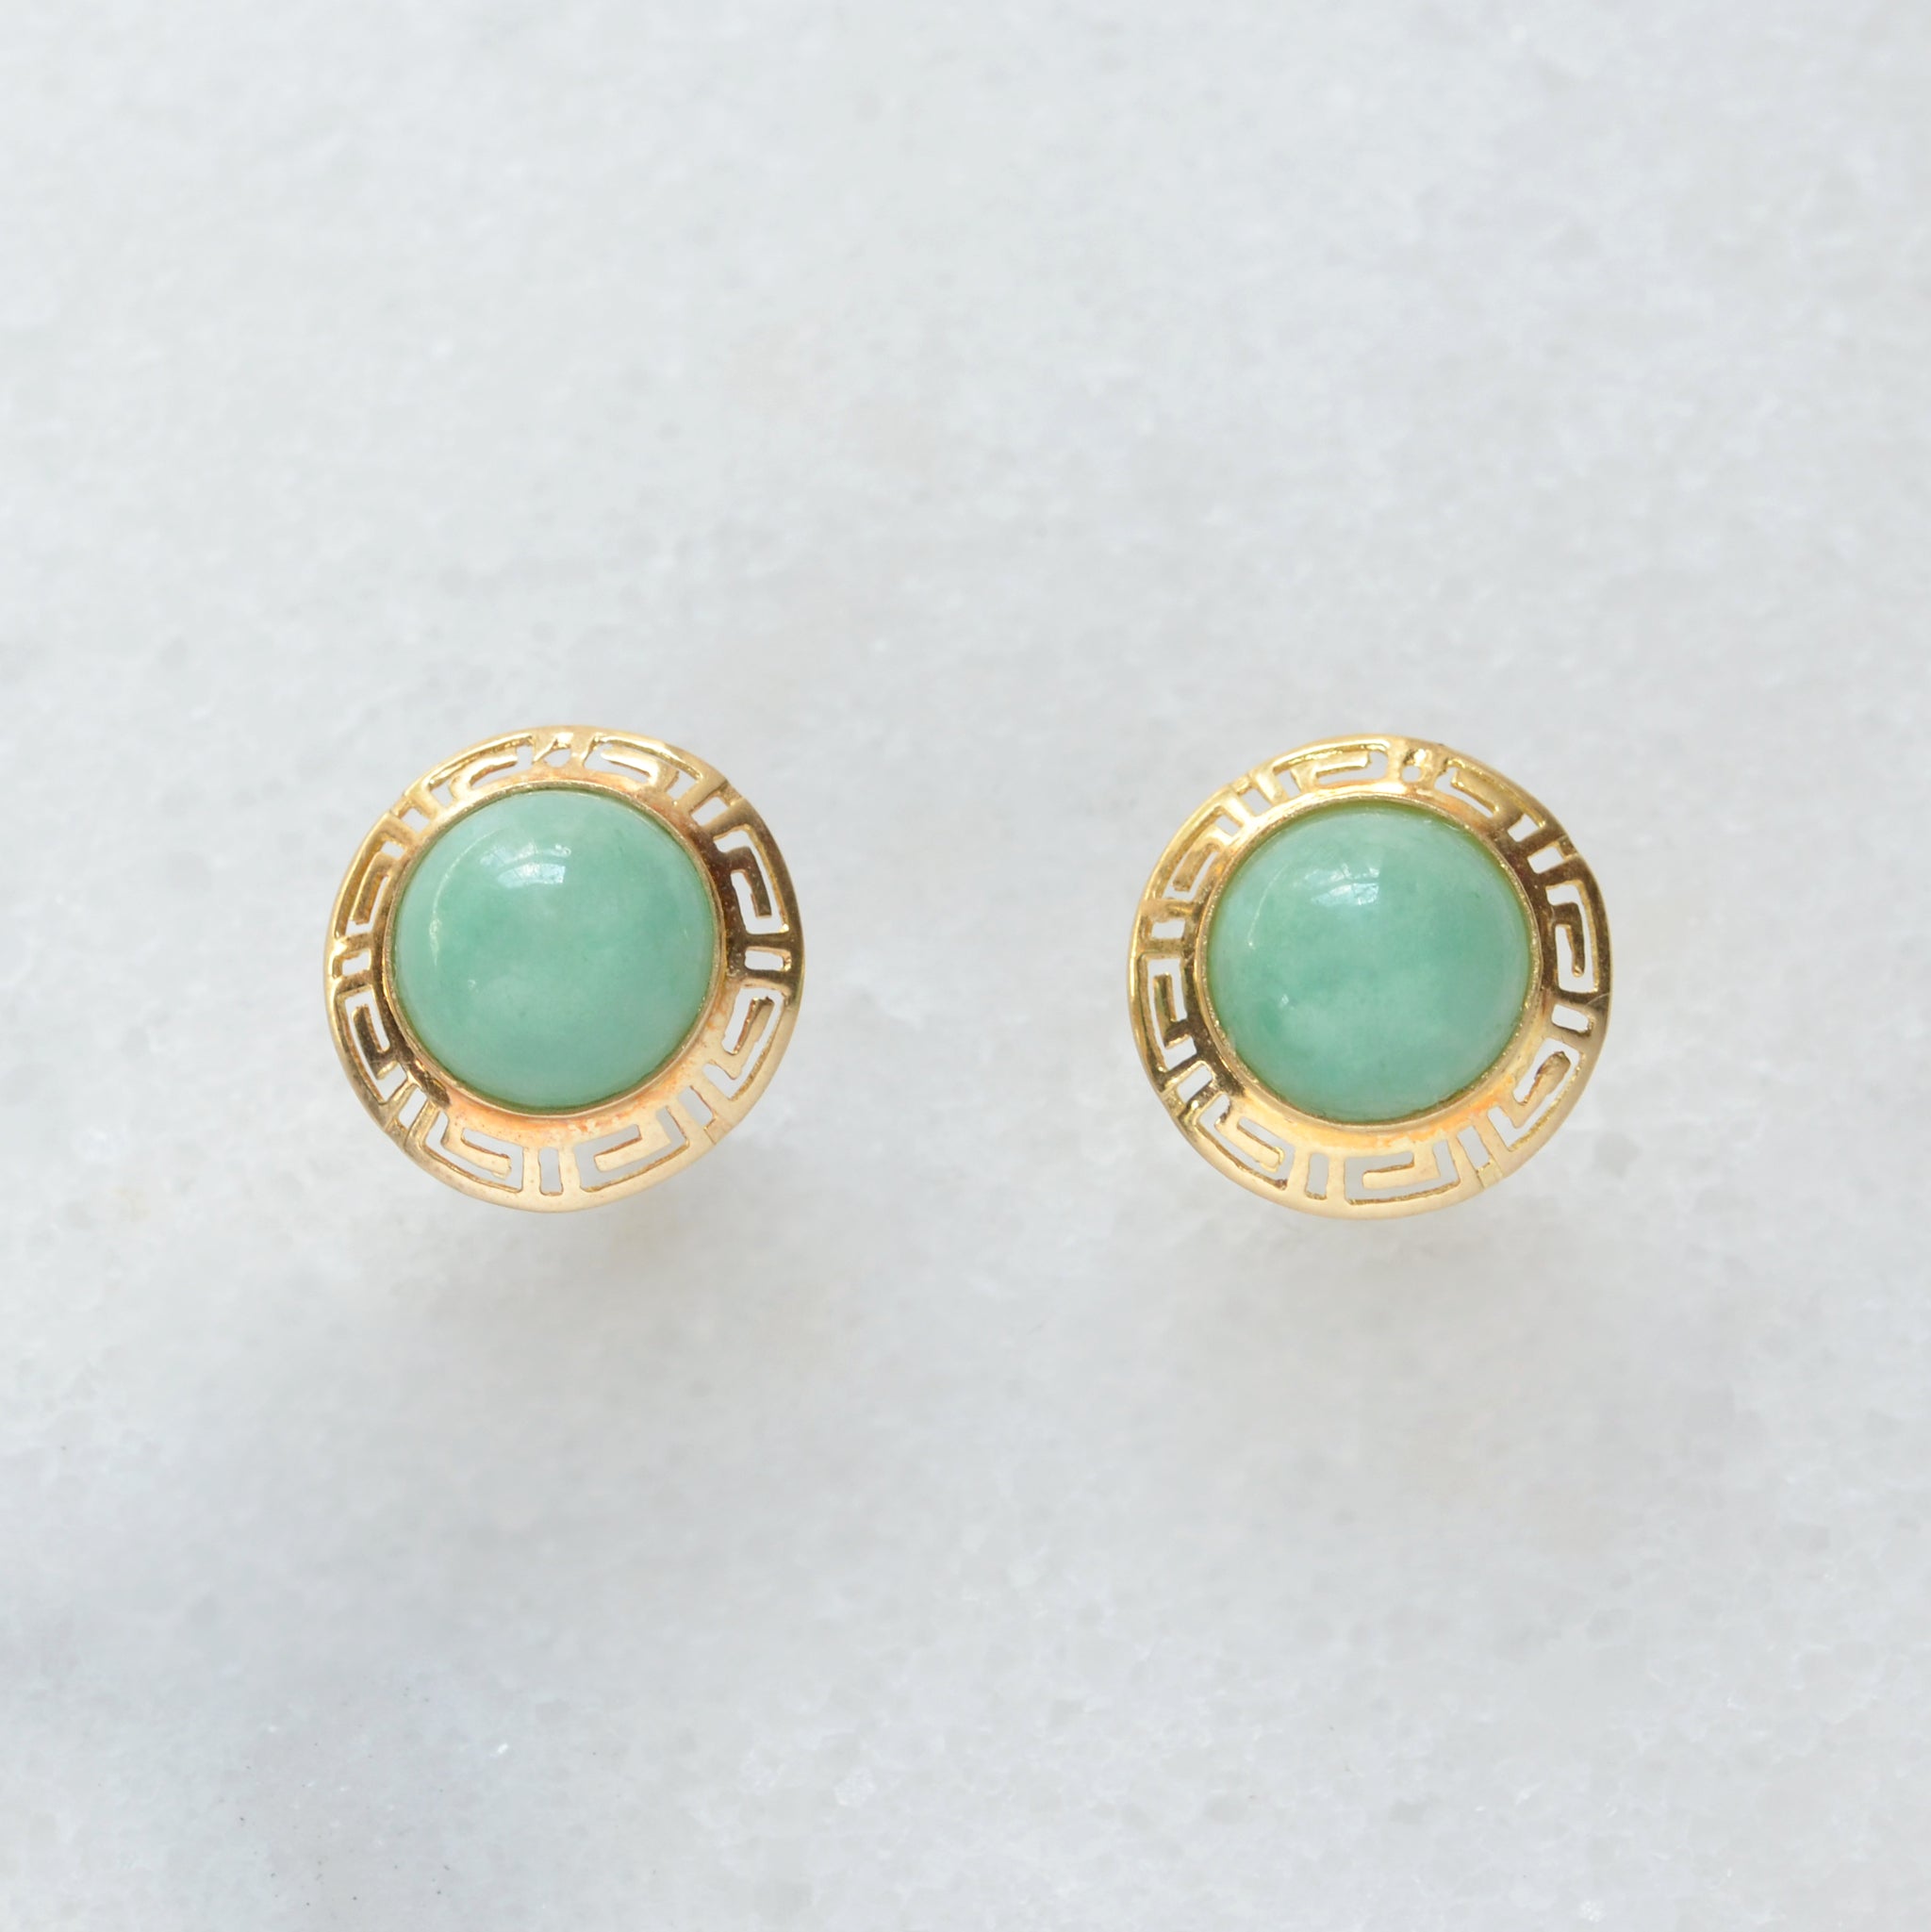 Buy Ming Jewelry Hawaii 14K Gold Earrings Gold Jade Earrings Carved Jade  Earrings Online in India - Etsy